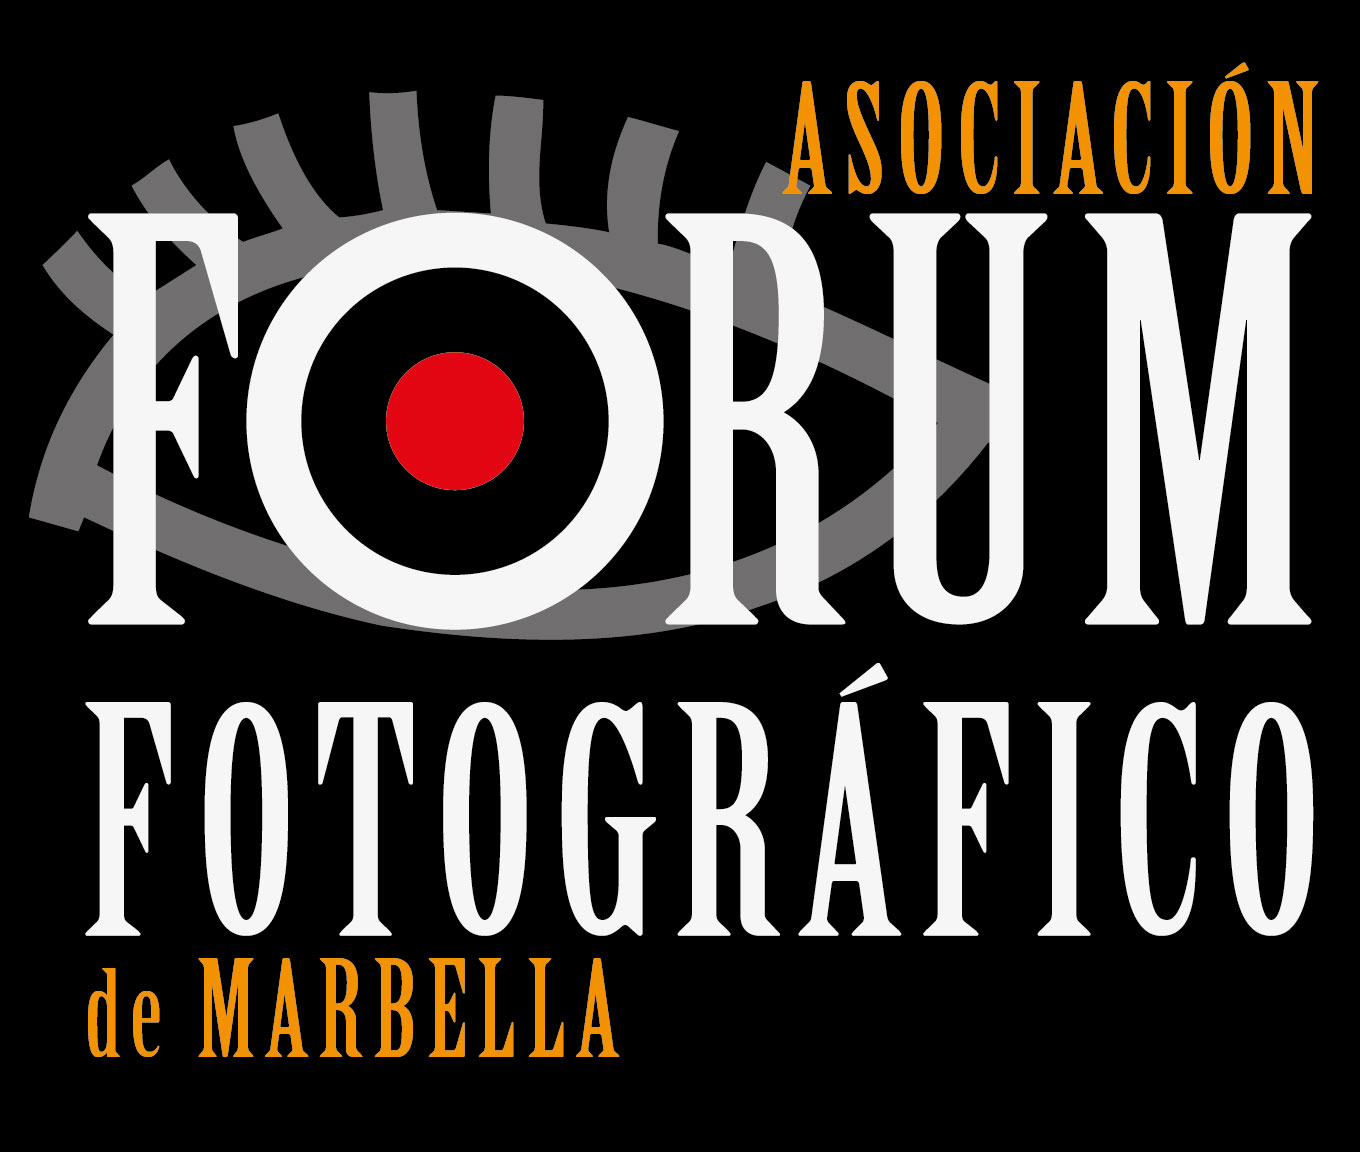 Logo Forum Fotográfico Asociación Web